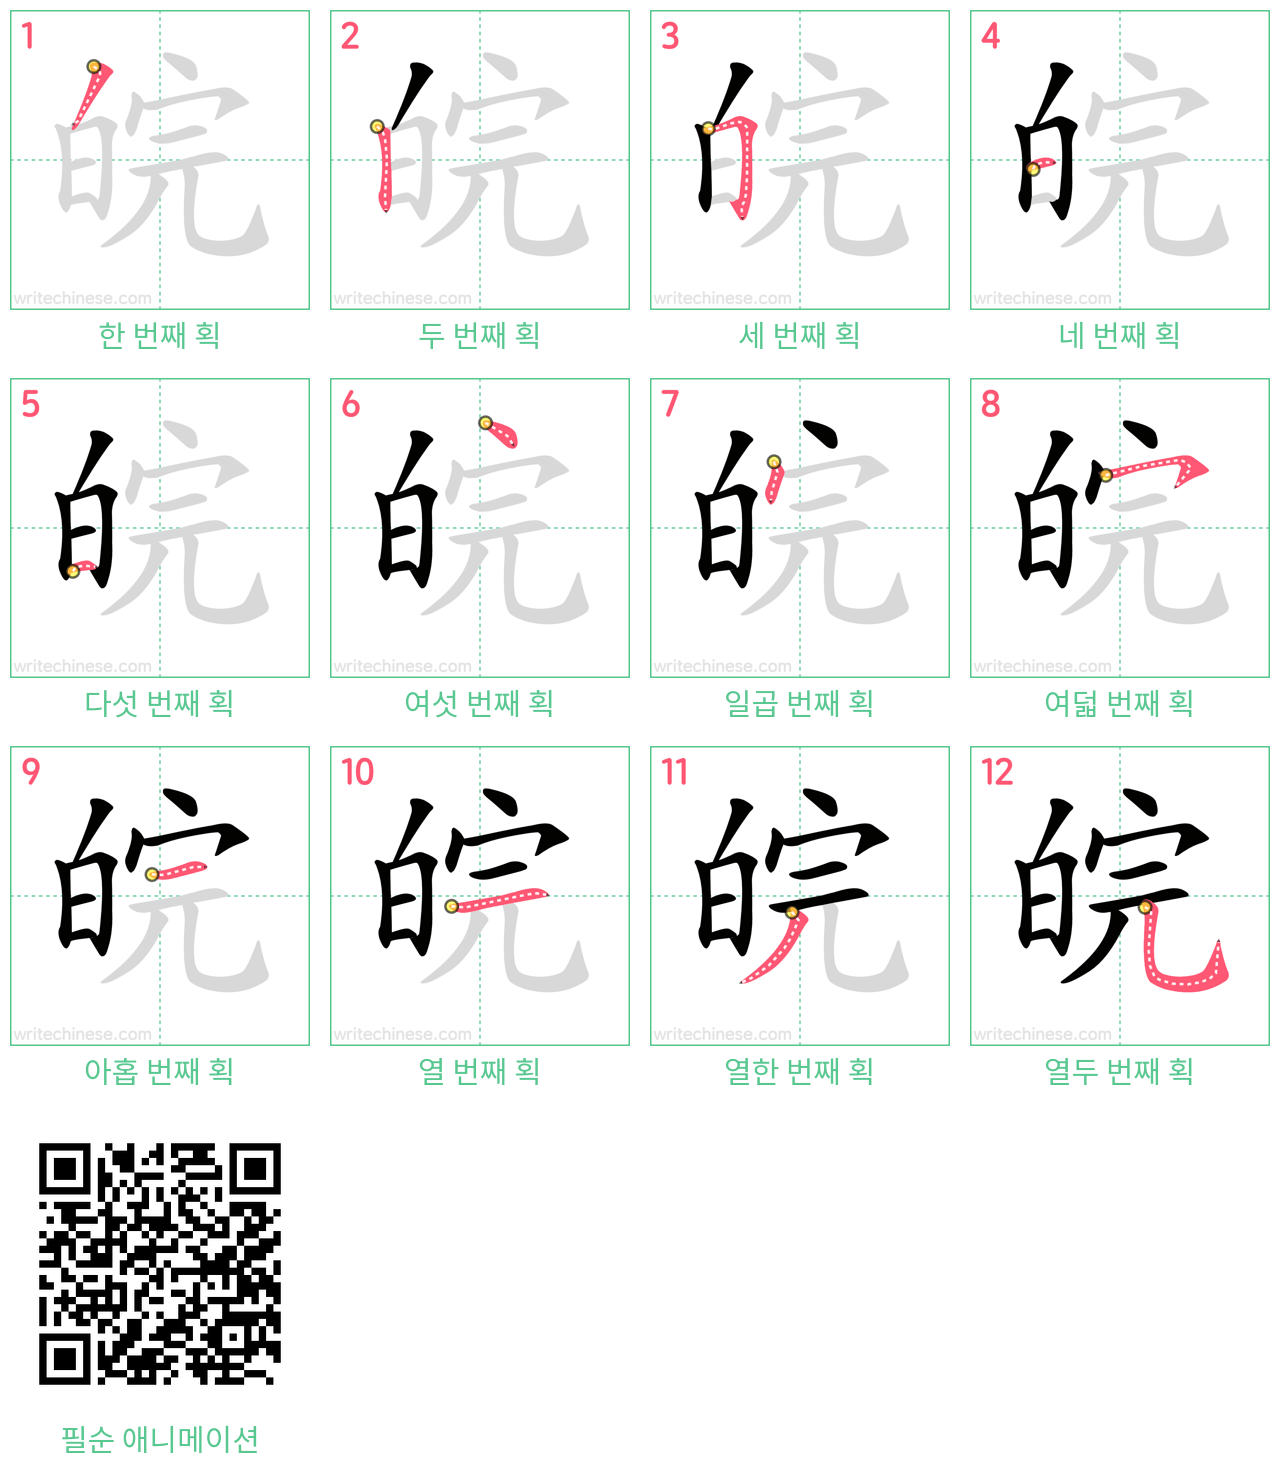 皖 step-by-step stroke order diagrams